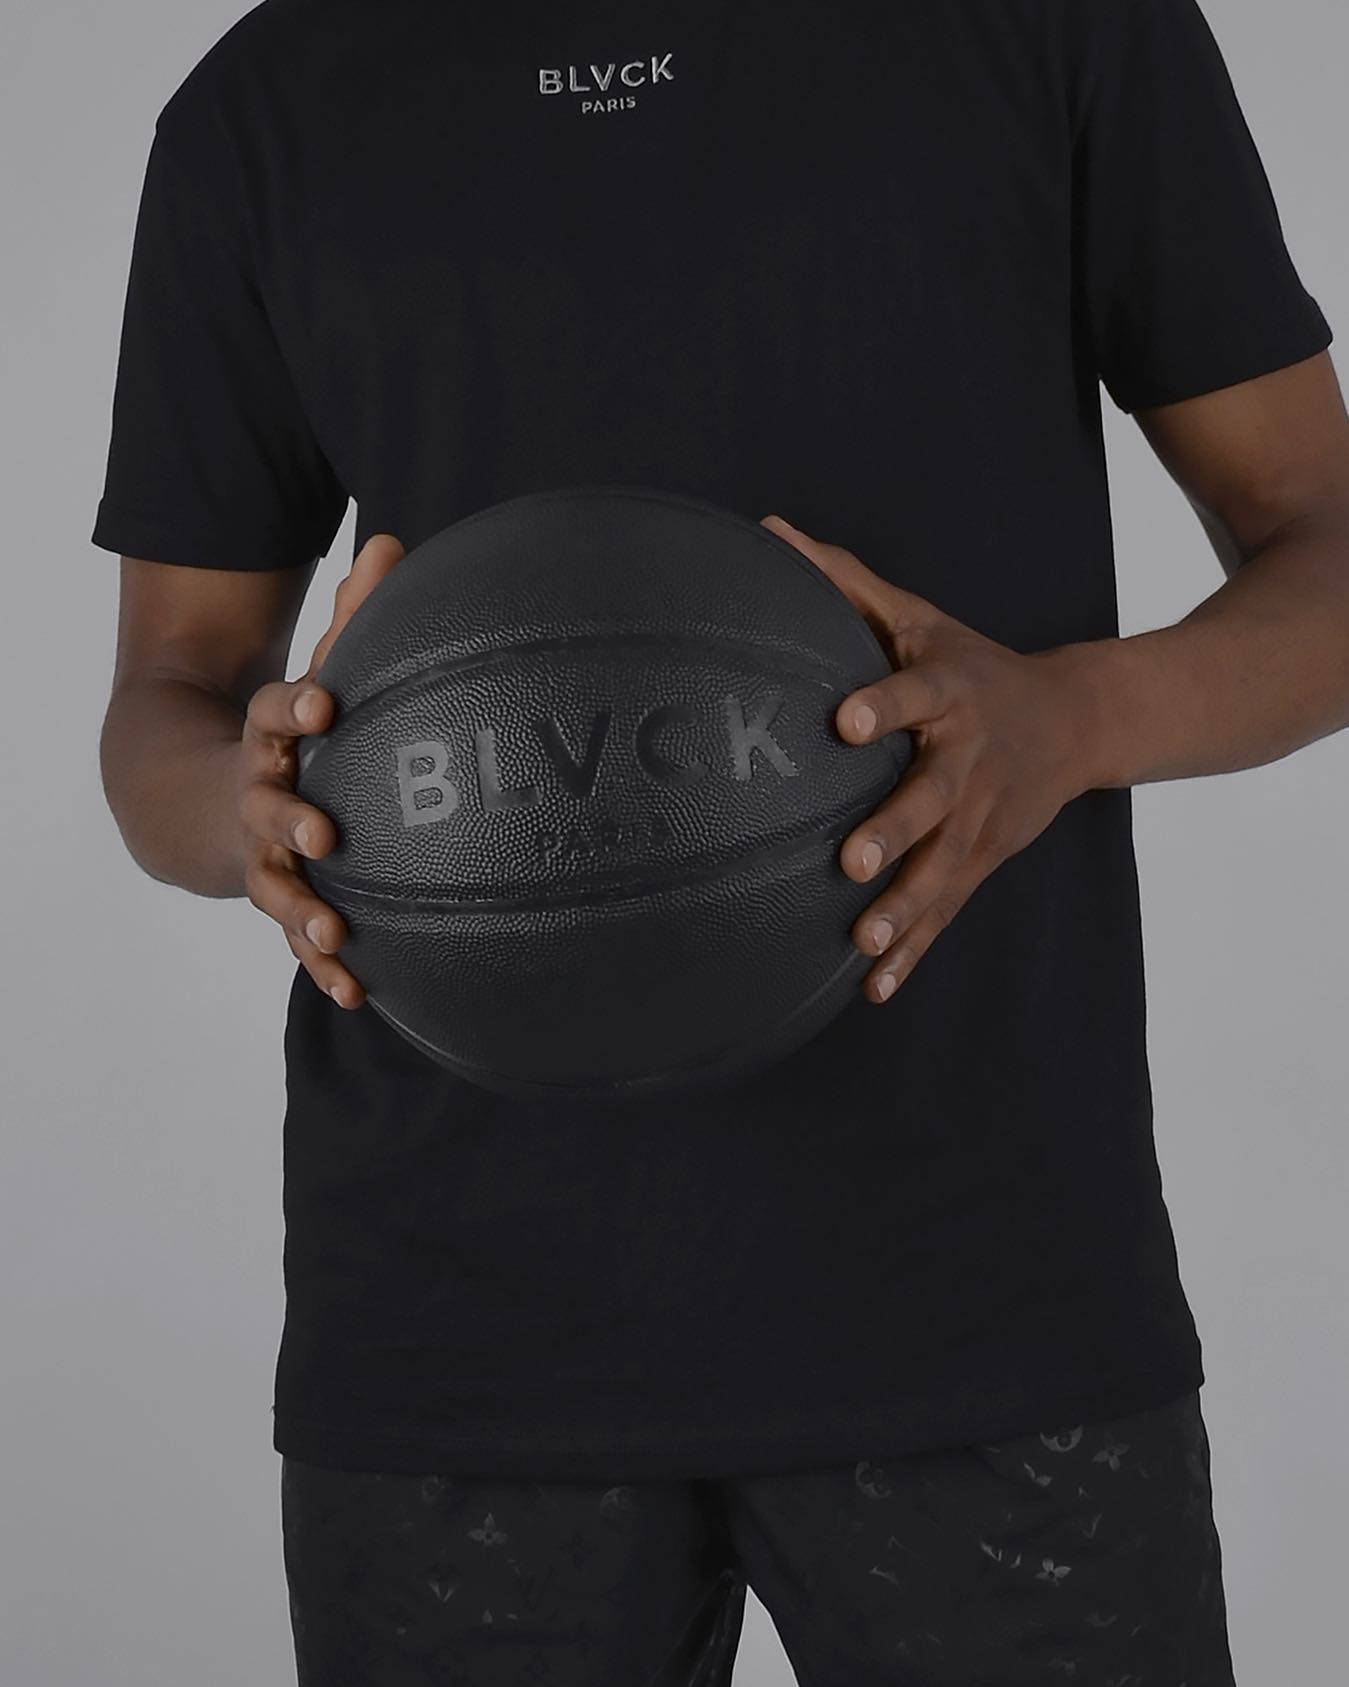 Blvck Paris Basketball Merch Wallpaper